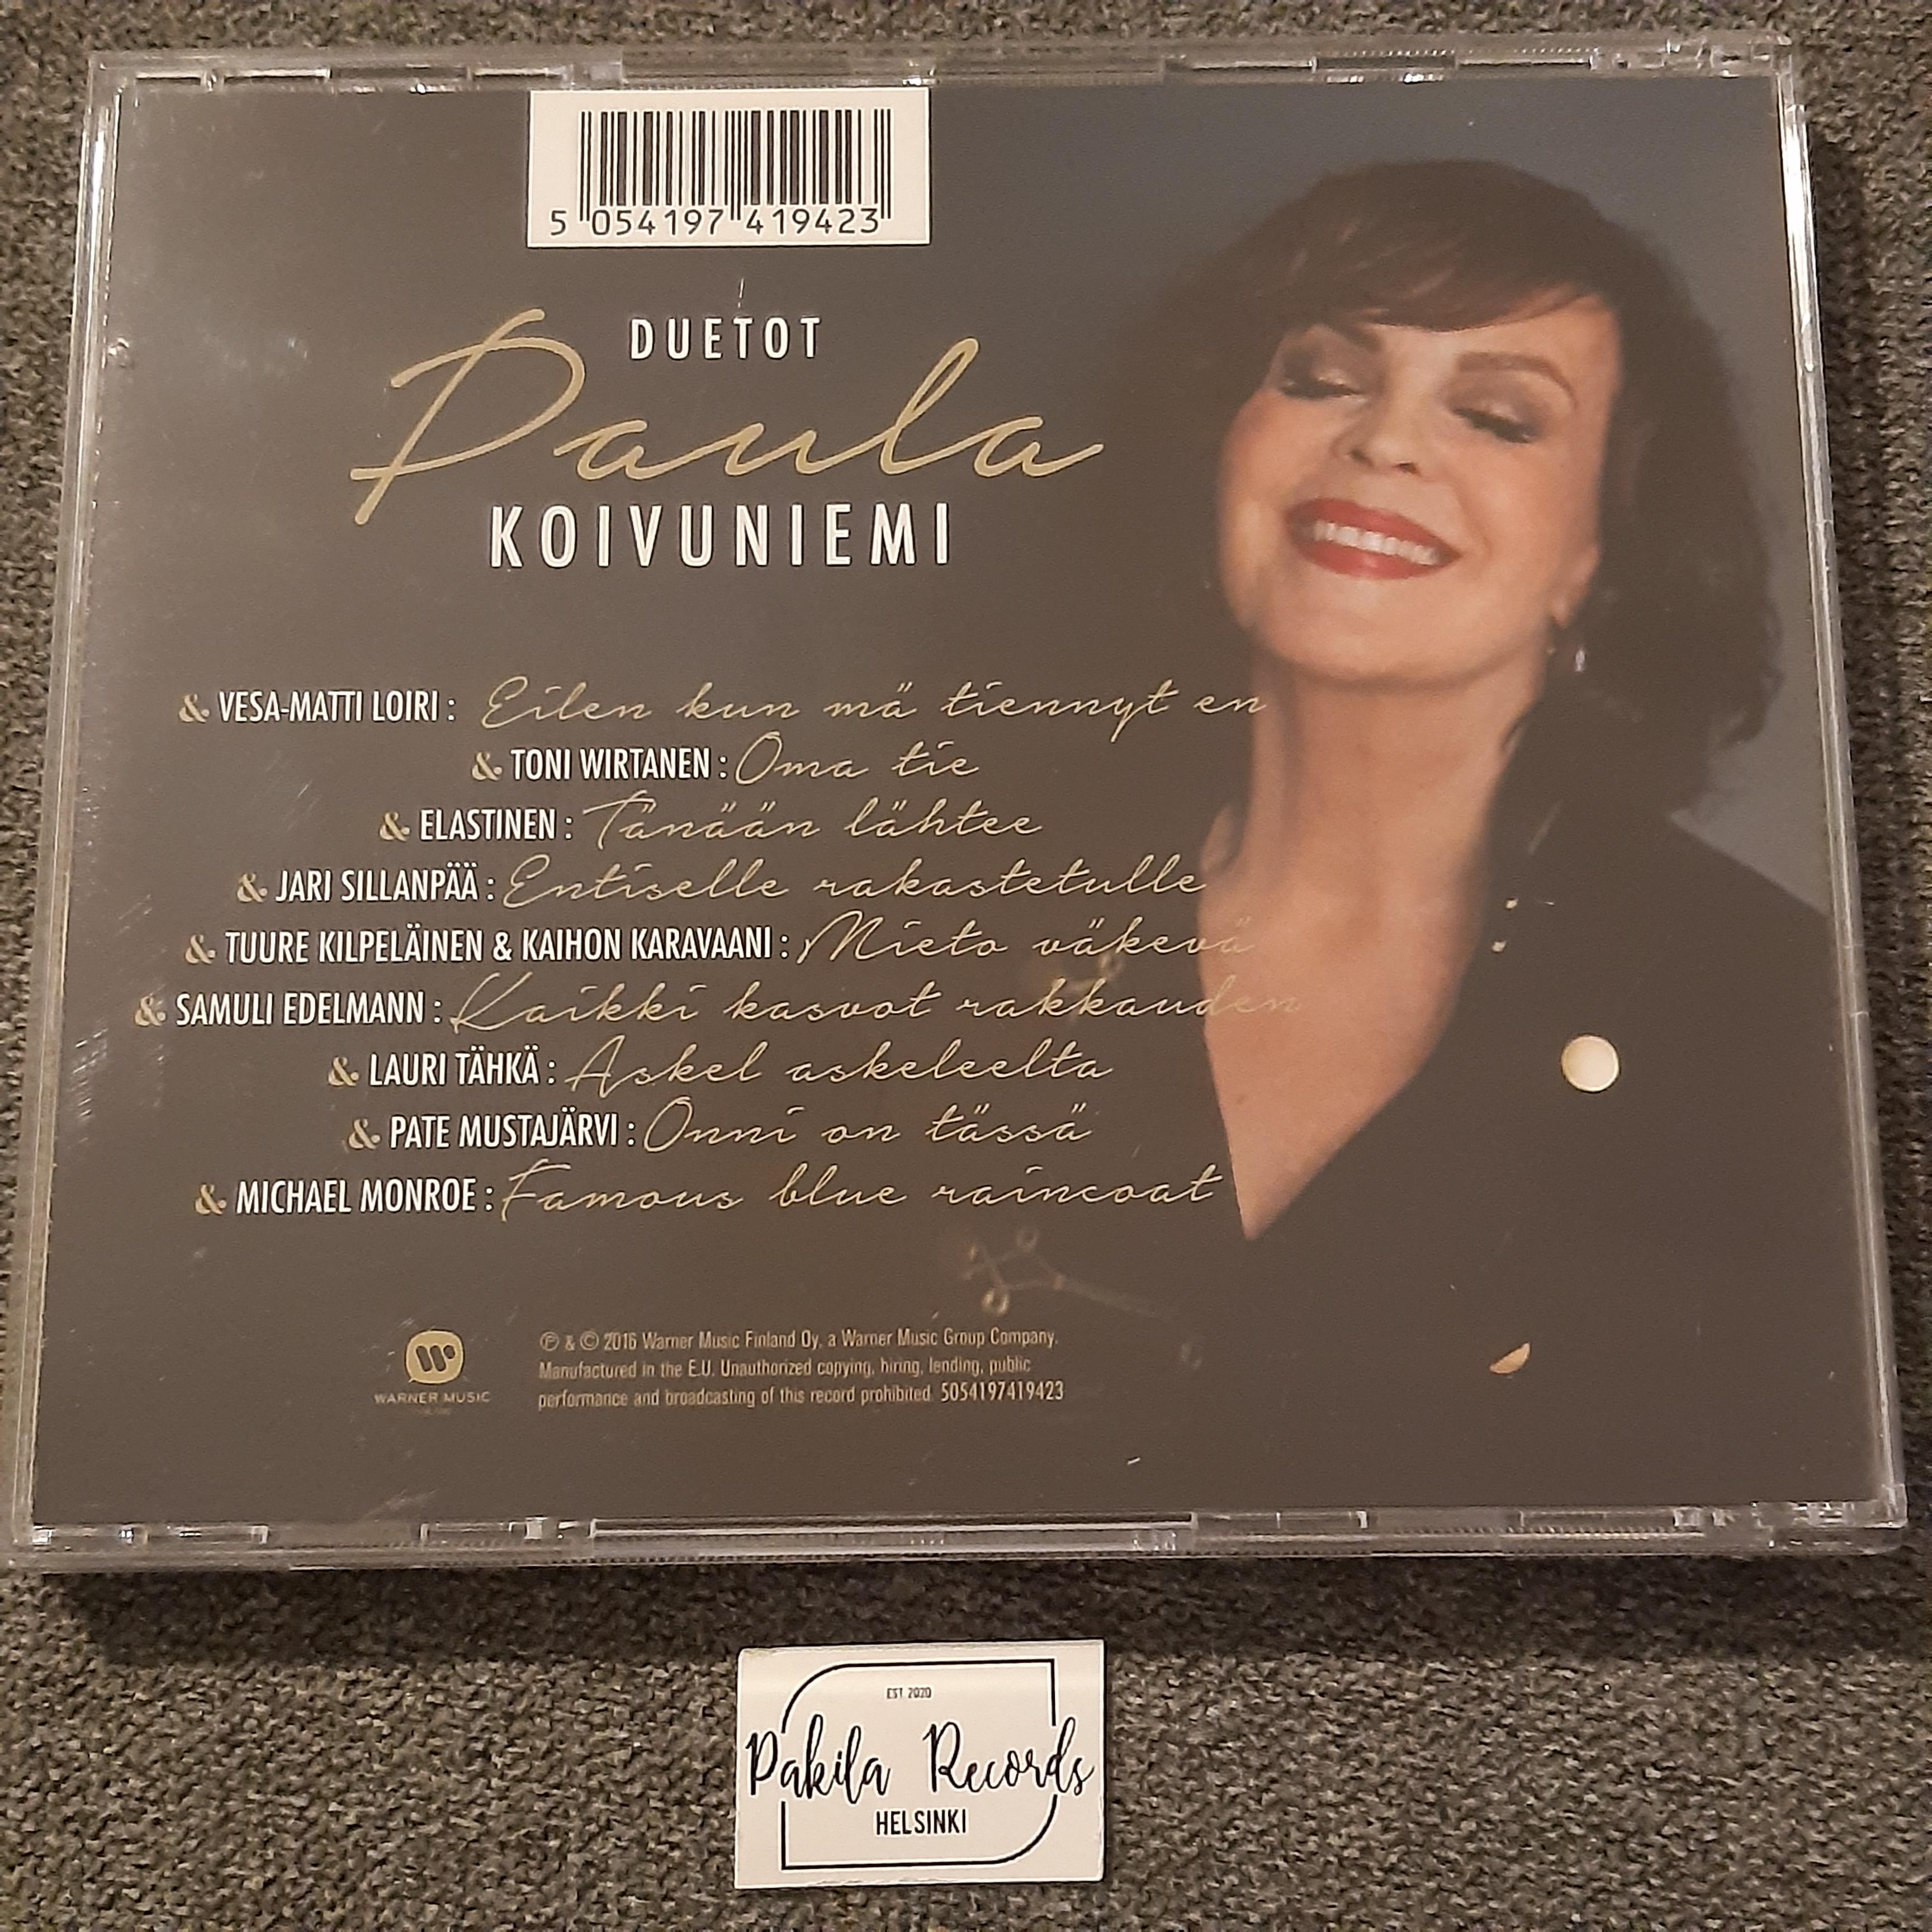 Paula Koivuniemi - Duetot - CD (käytetty)